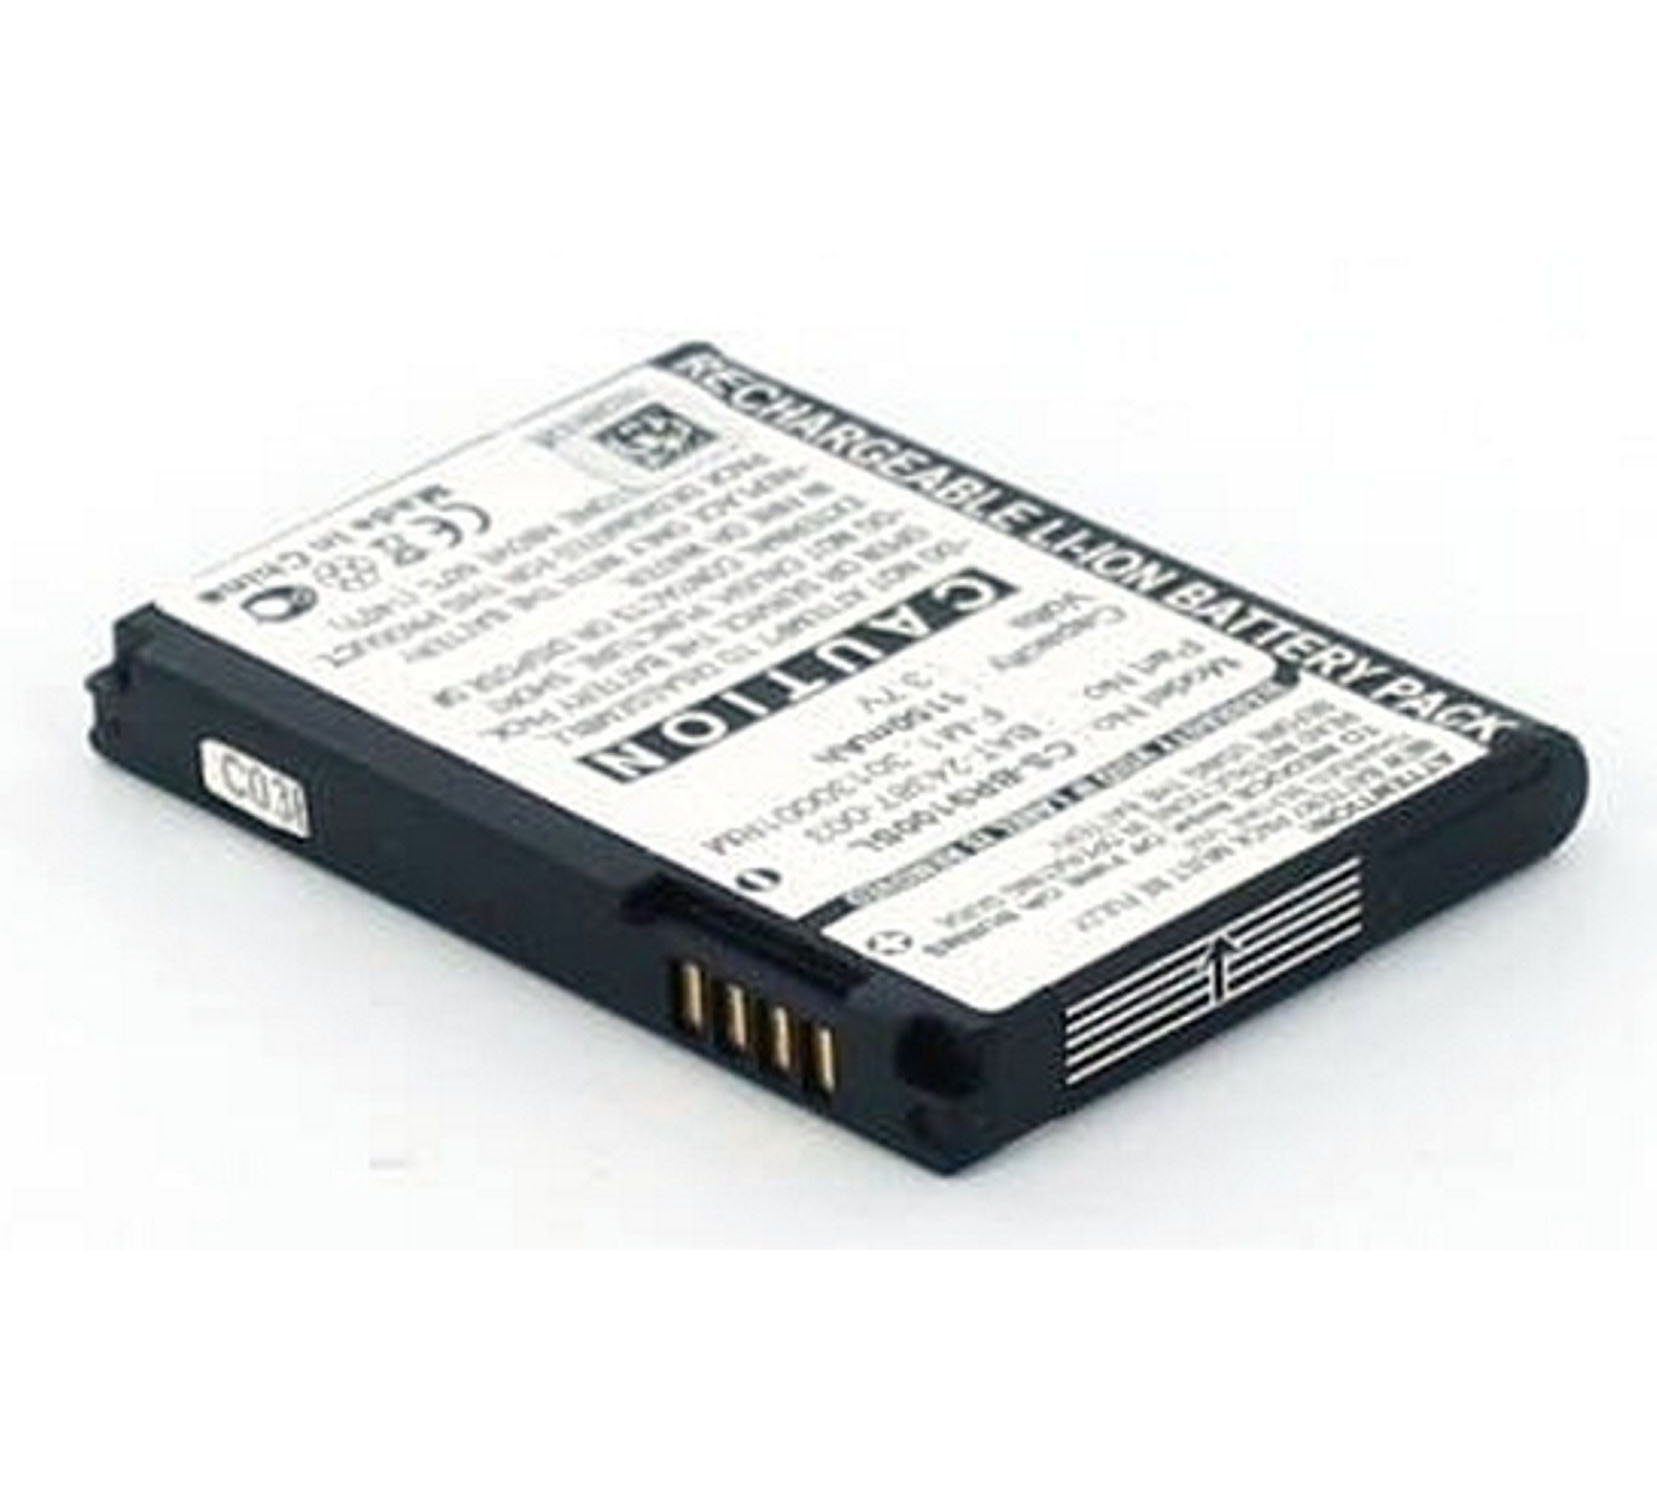 MobiloTec Akku kompatibel mit Blackberry BAT-24387-003 Laptop-Akku Akku 1100 mAh